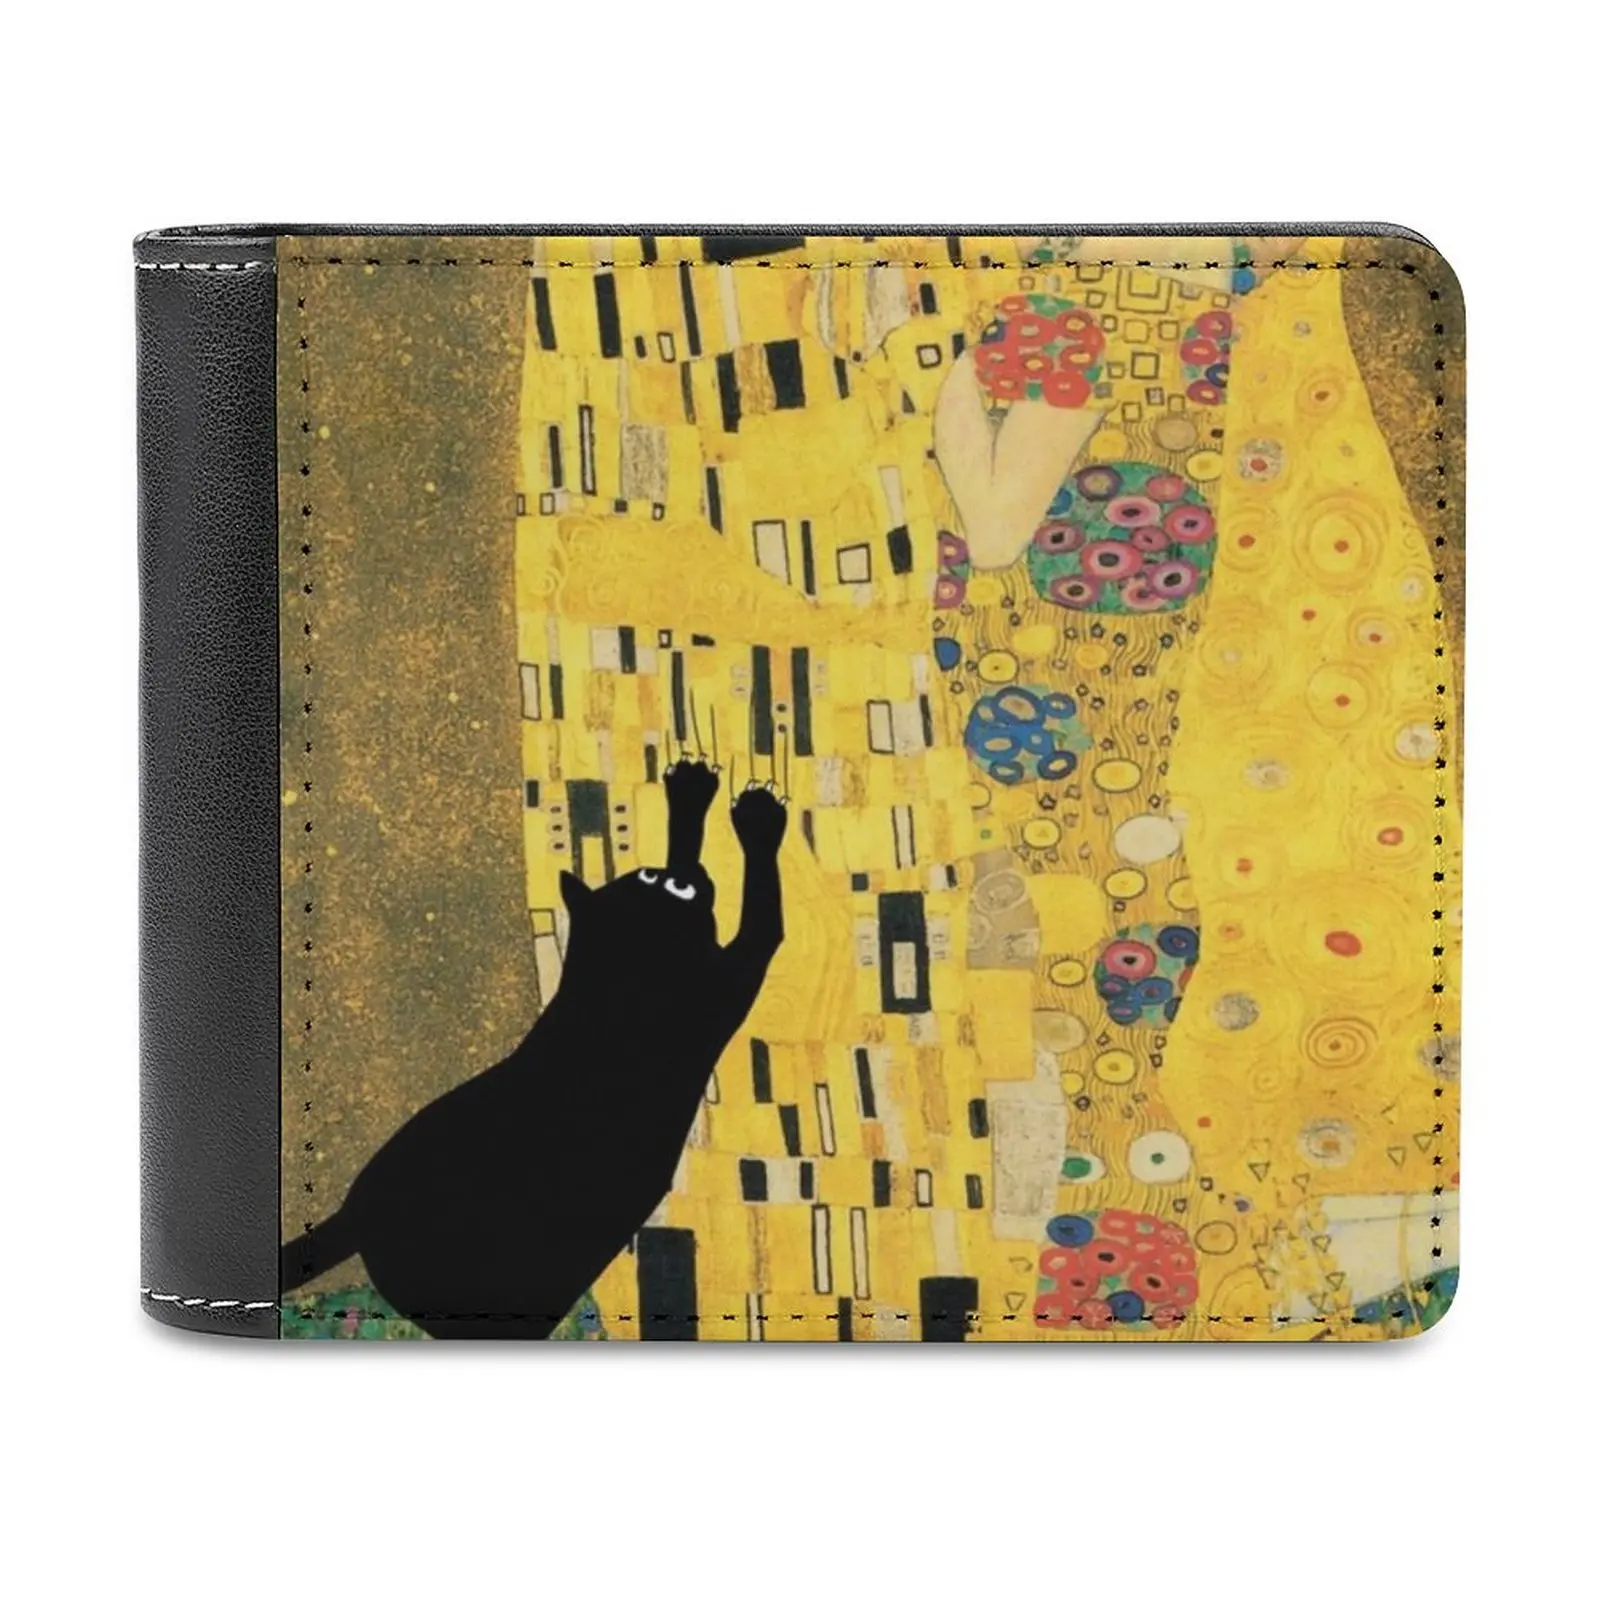 

Кожаный кошелек Klimt с котом, мужской тонкий кошелек, Женский кошелек, сумка для денег, кошка, кошка, черные кошки, царапины